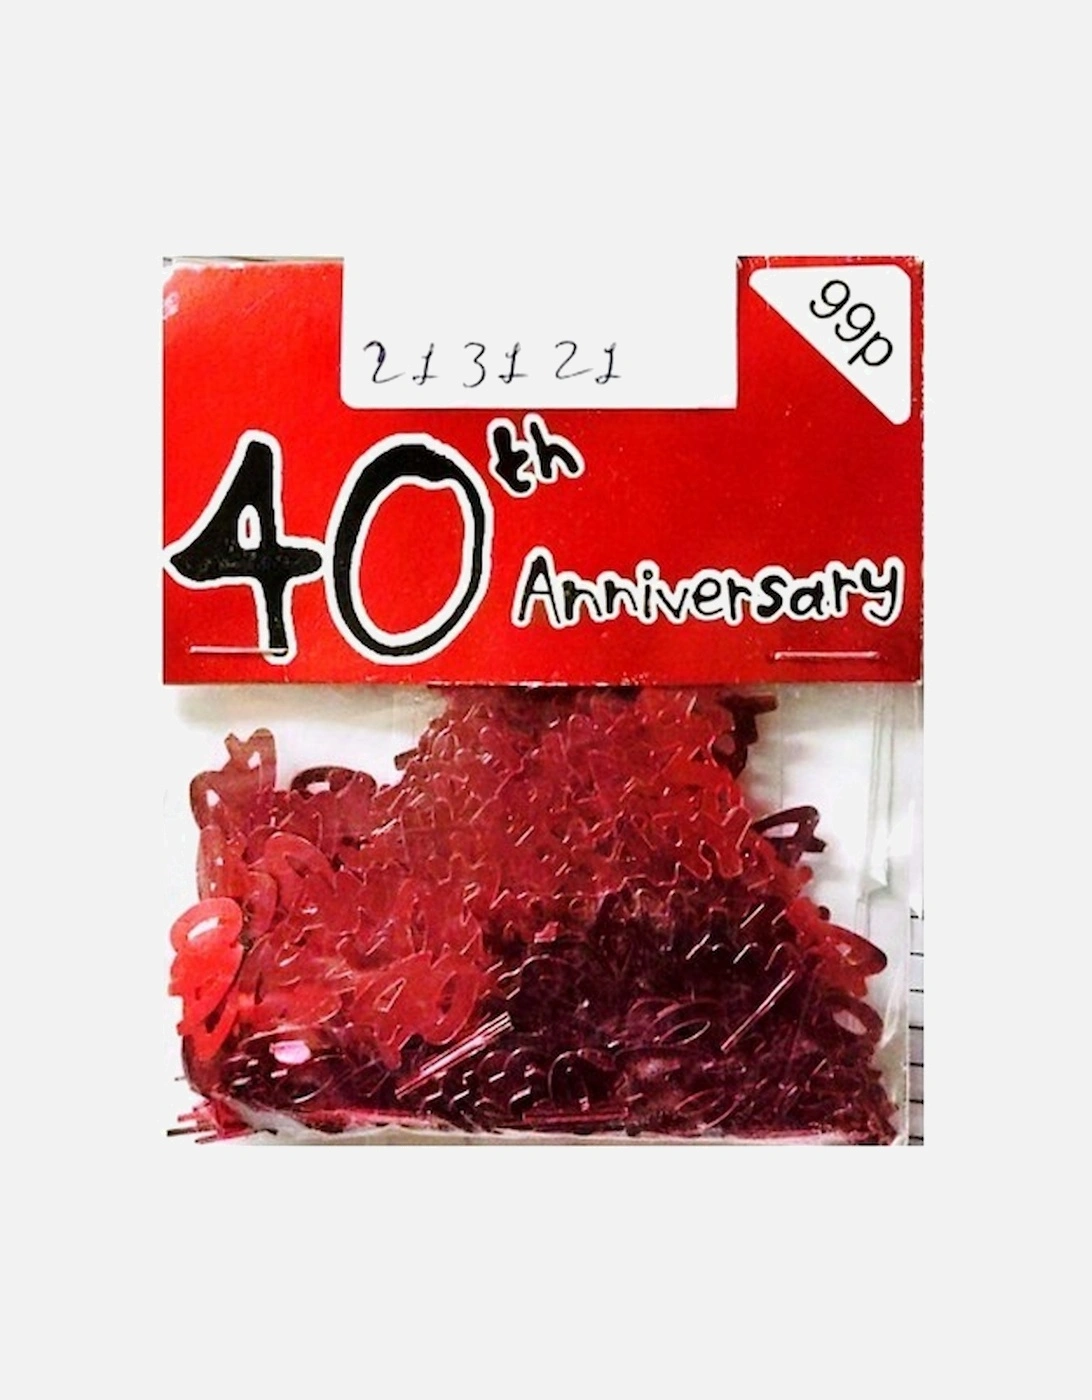 40th Anniversary Confetti, 2 of 1